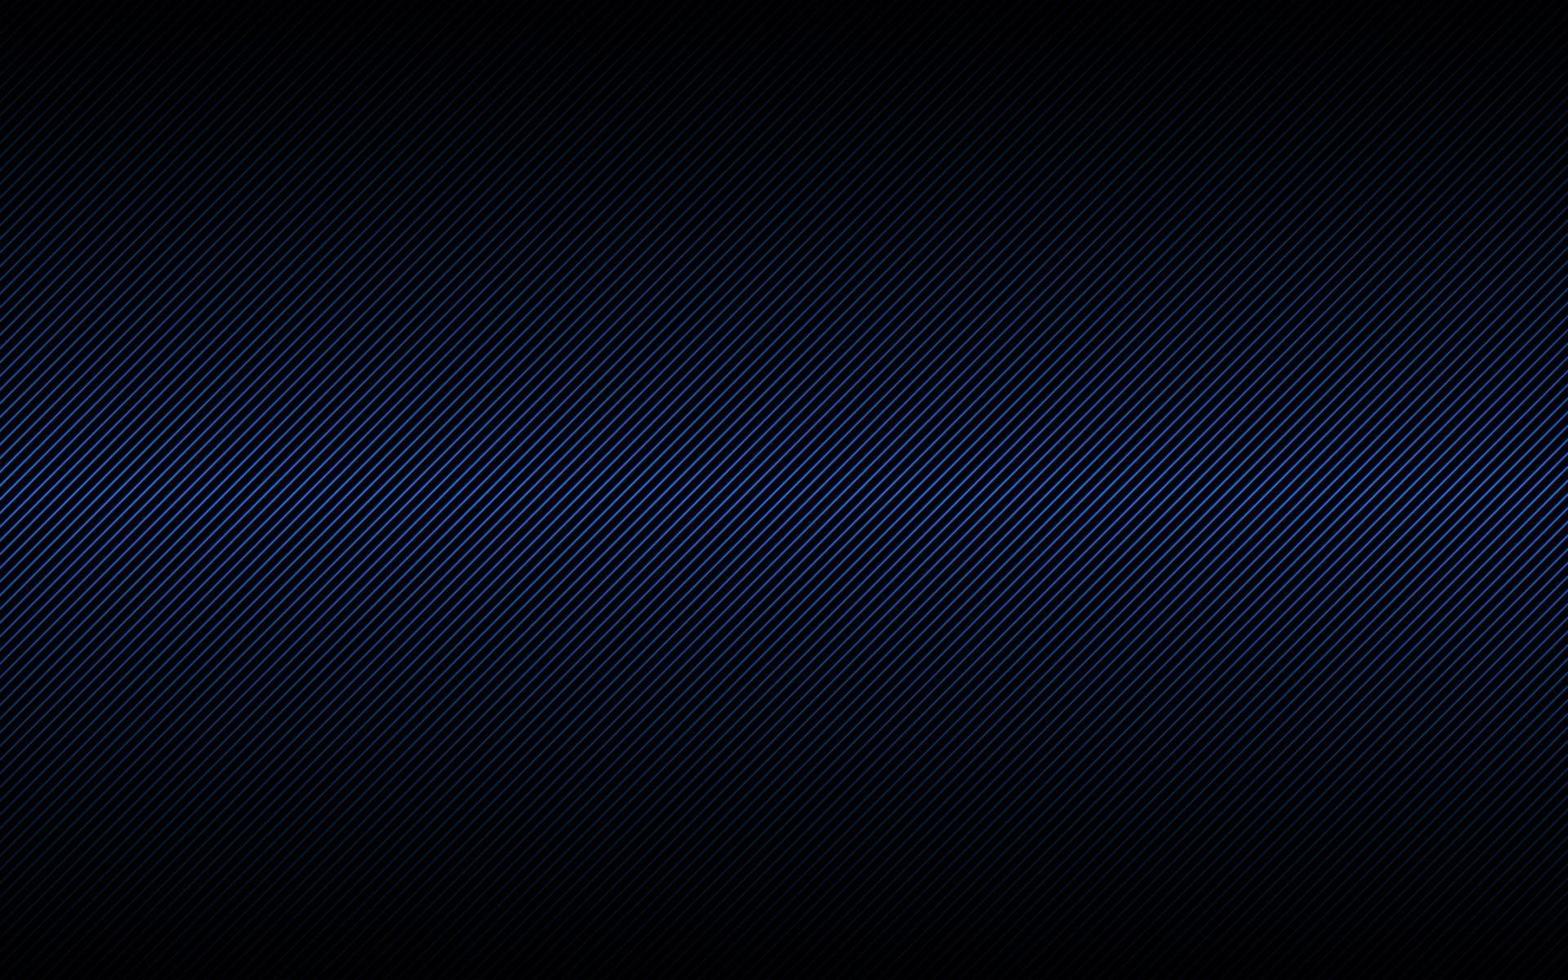 donkere abstracte achtergrond met blauwe en zwarte schuine lijnen. gestreept patroon. evenwijdige lijnen en stroken. diagonale vezel. vector illustratie